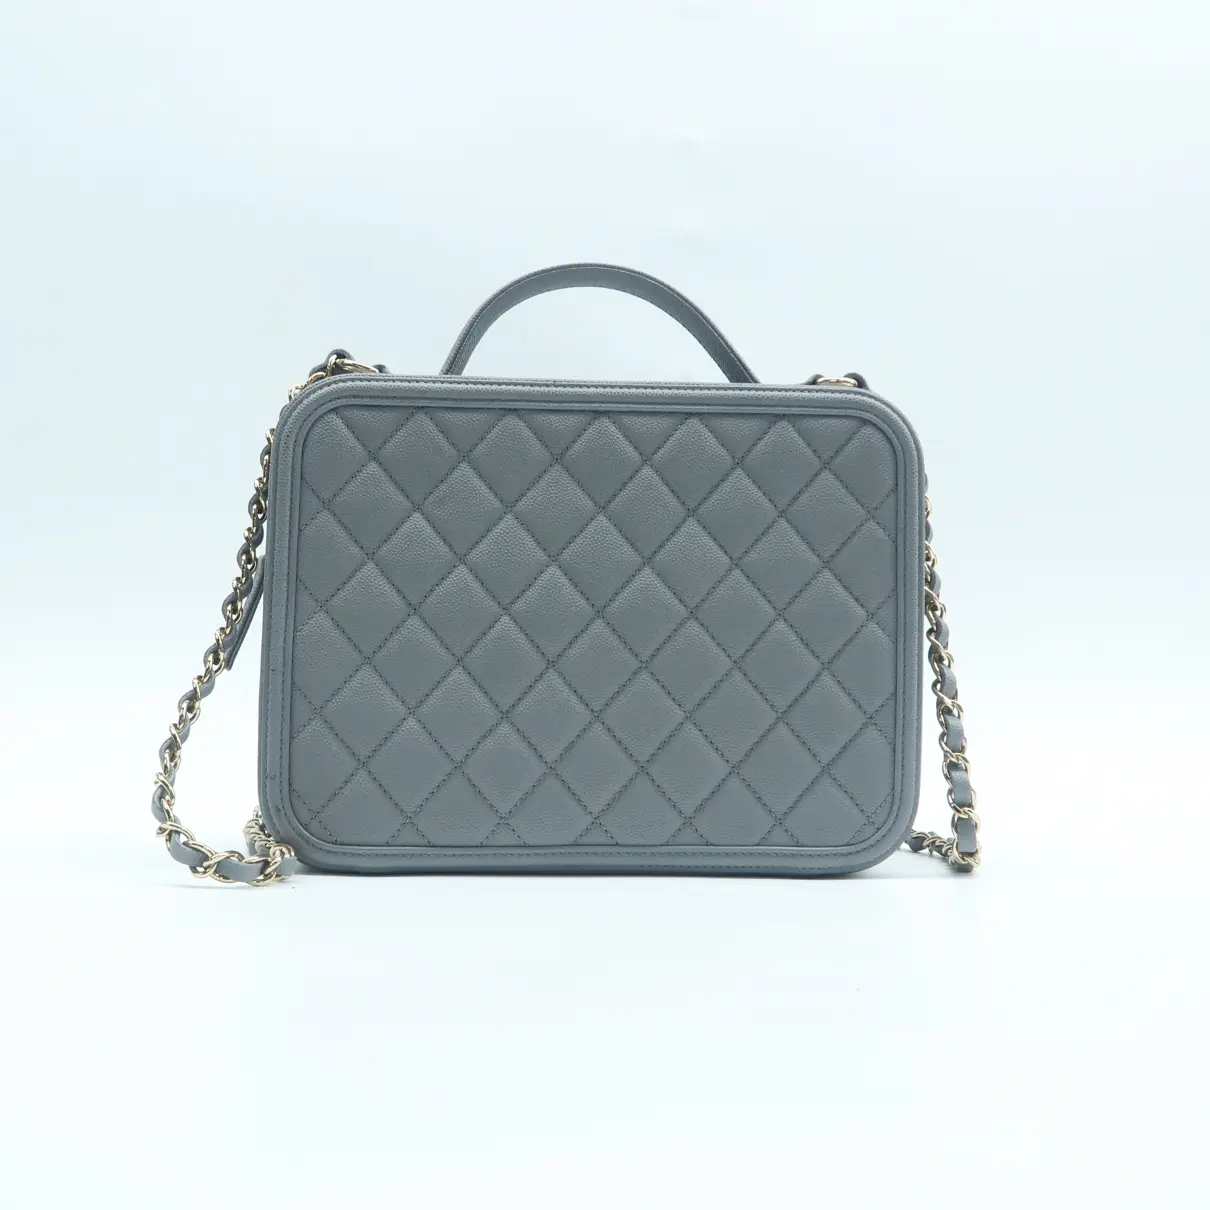 Vanity leather satchel Chanel